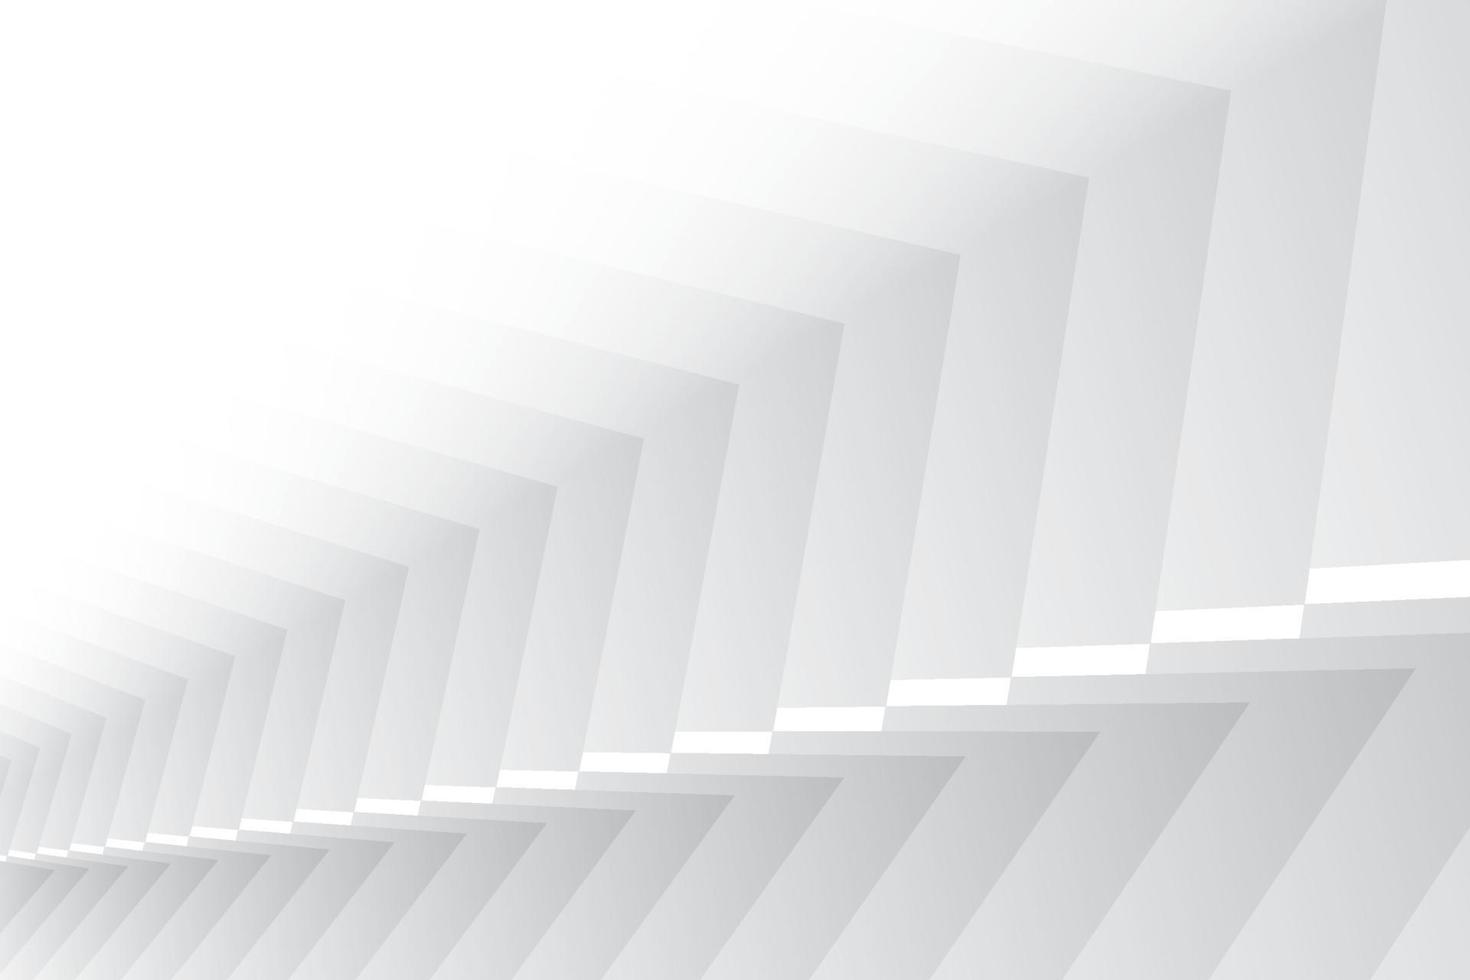 abstrakt vit och grå färg, modern designbakgrund med geometrisk form. vektor illustration.